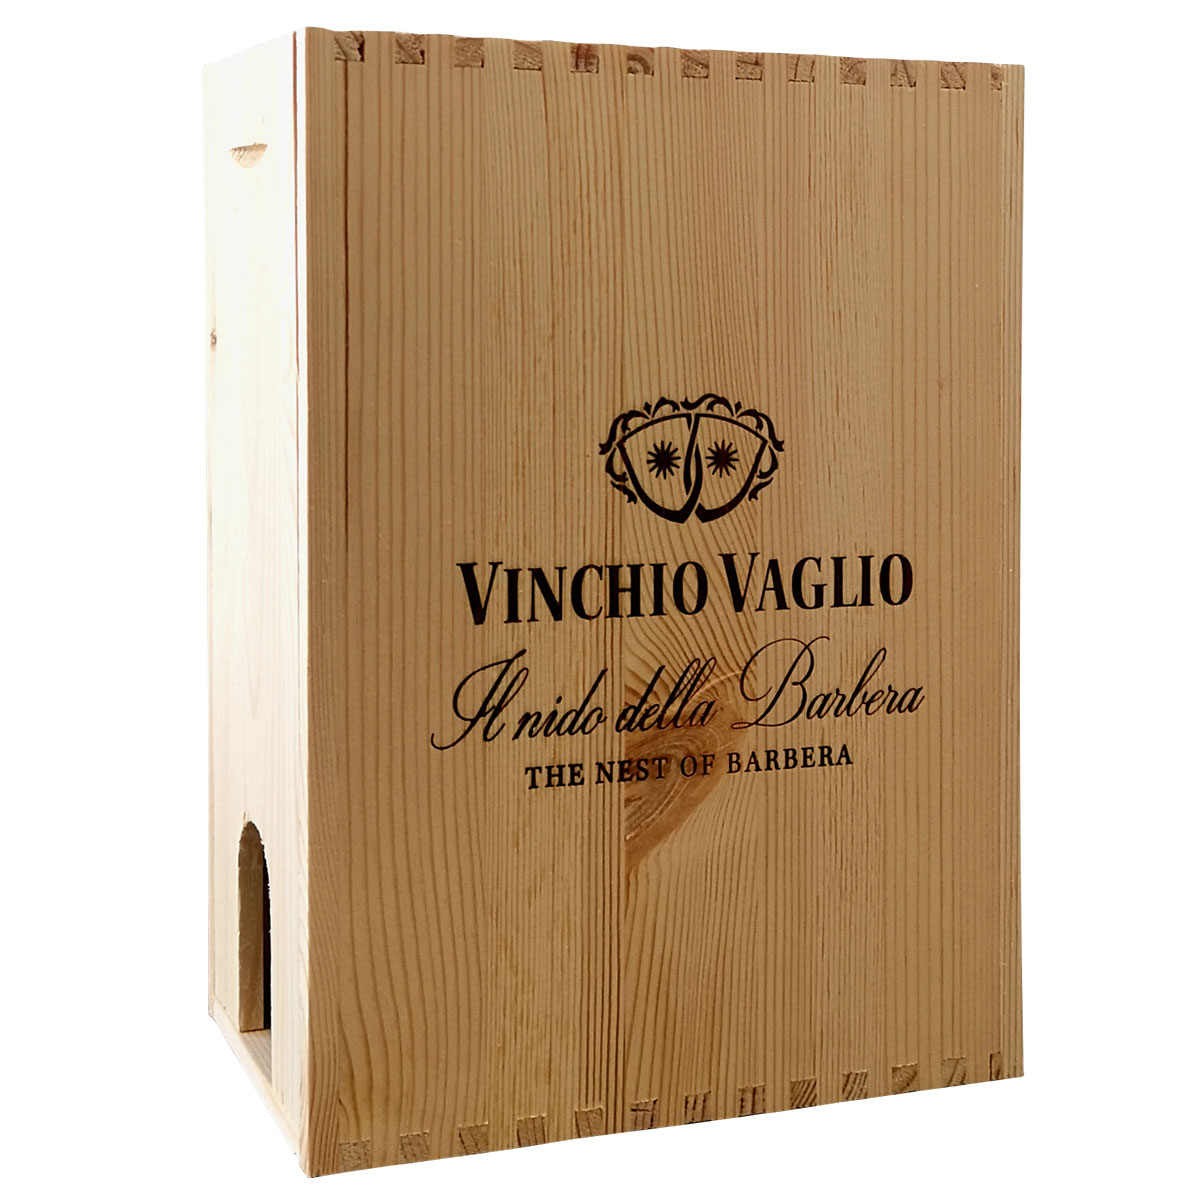 Wooden Box for 3-litre bag in box • Vinchio Vaglio